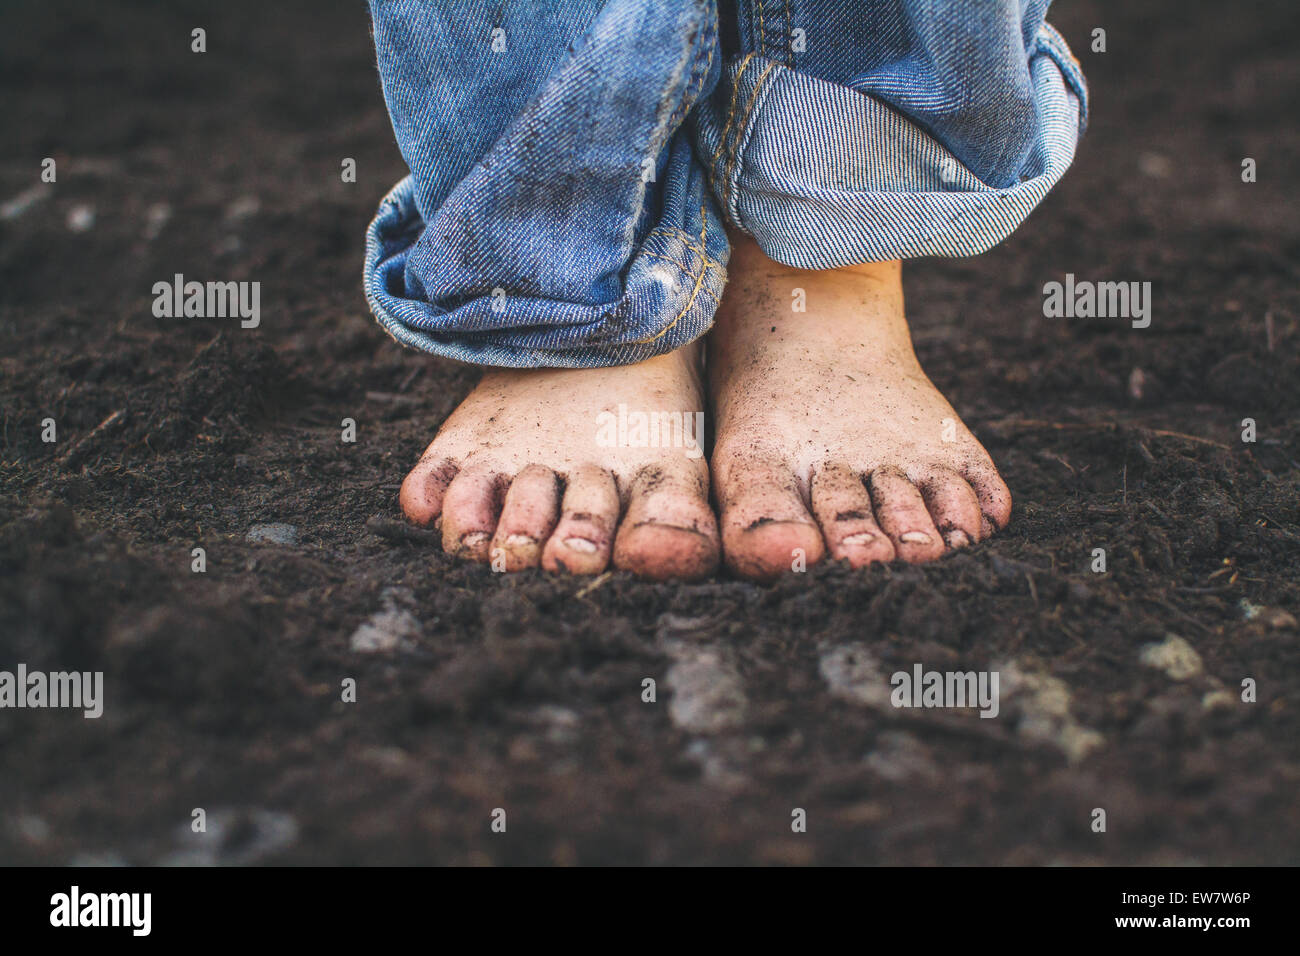 Primer plano de los pies sucios de un niño de pie en el suelo Foto de stock